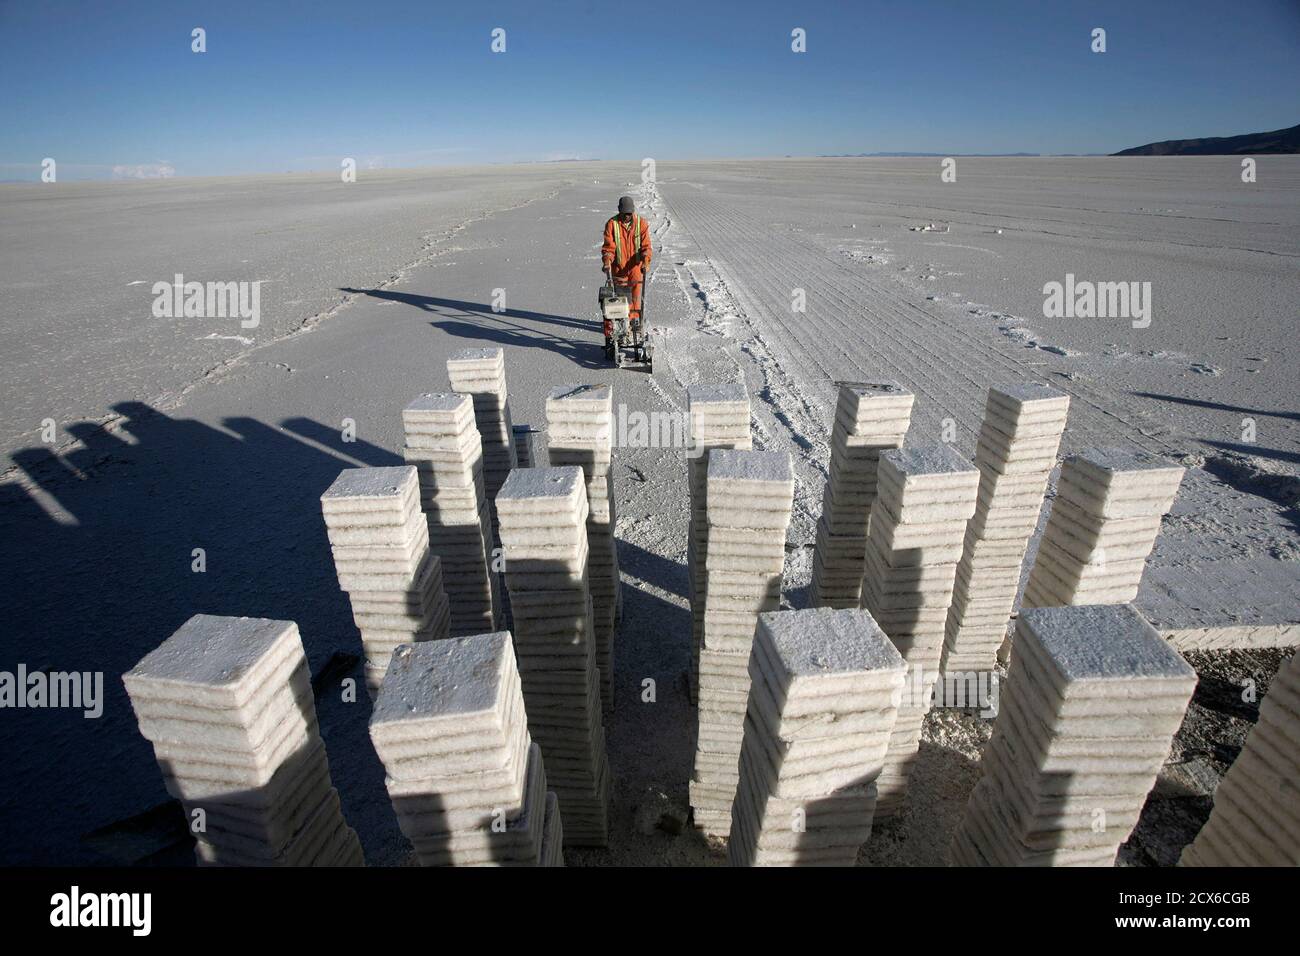 Blöcke des Salzes werden auf Uyuni Salzsee gesehen verfügt über der weltweit größte Lithium, ca. 500 km (311 Meilen) südlich von La Paz, 28. November 2010 reservieren. Bolivien-Pläne zum Bau einer Anlage um bis zu 30.000 Tonnen pro Jahr von der Uyuni Lithiumcarbonat produzieren Salz See. Bolivien nicht derzeit Lithium, die Hauptkomponente der Akkus dieser Netzteile von Notebooks bis hin zu Kameras von mir. Bild von 28. November 2010. REUTERS/Gaston Brito (Bolivien - Tags: BUSINESS-Energie-Umwelt) Stockfoto